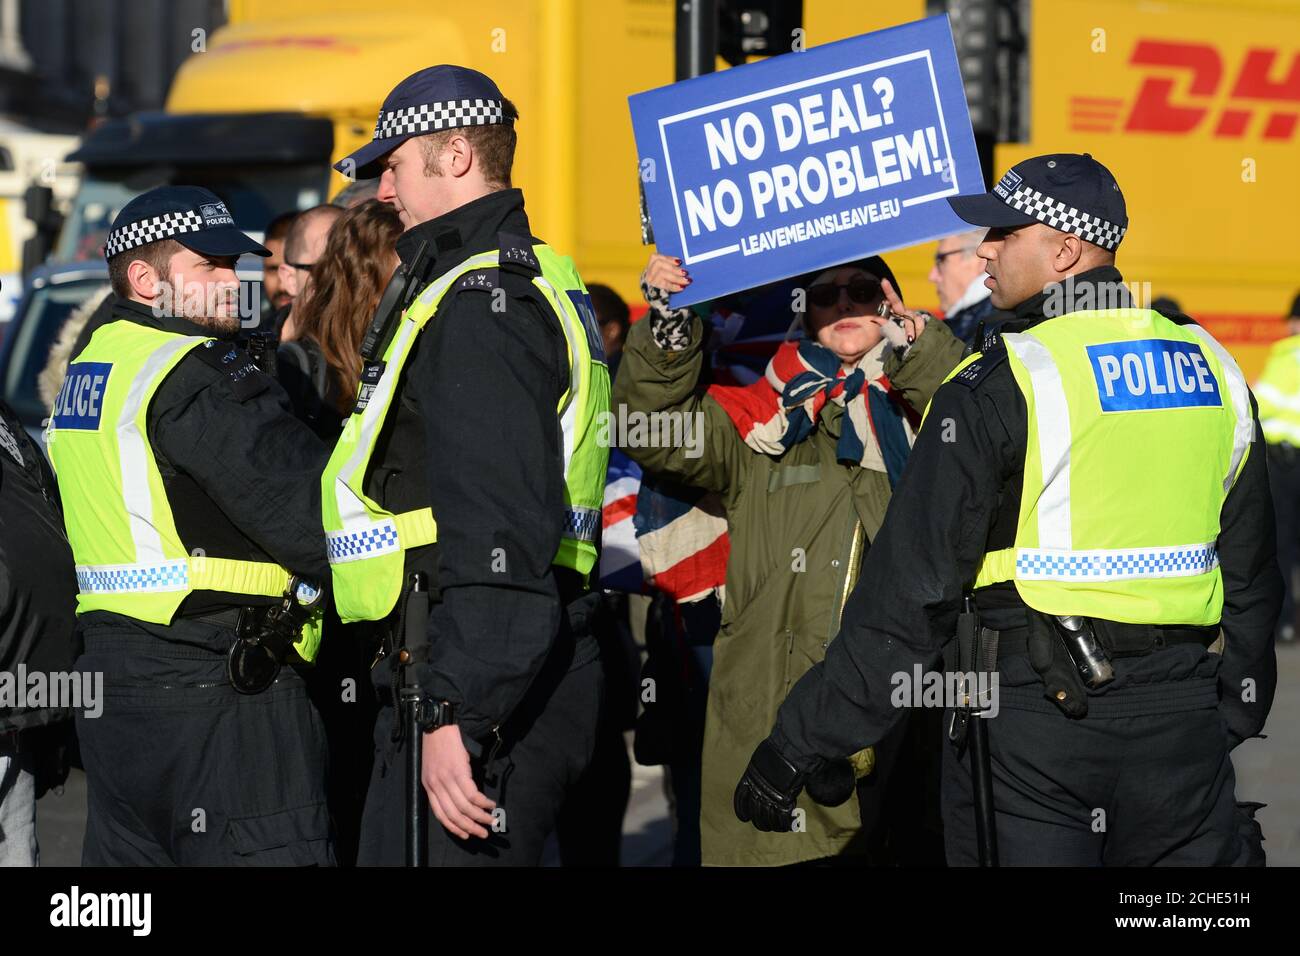 La polizia si trova nei pressi di sostenitori della Pro Brexit al di fuori del Parlamento di Londra, mentre la polizia vicino al Parlamento è stata "informata di intervenire in modo appropriato" se la legge viene violata dopo che l'onorevole Soubry li ha accusati di ignorare gli abusi commessi contro politici e giornalisti. Foto Stock